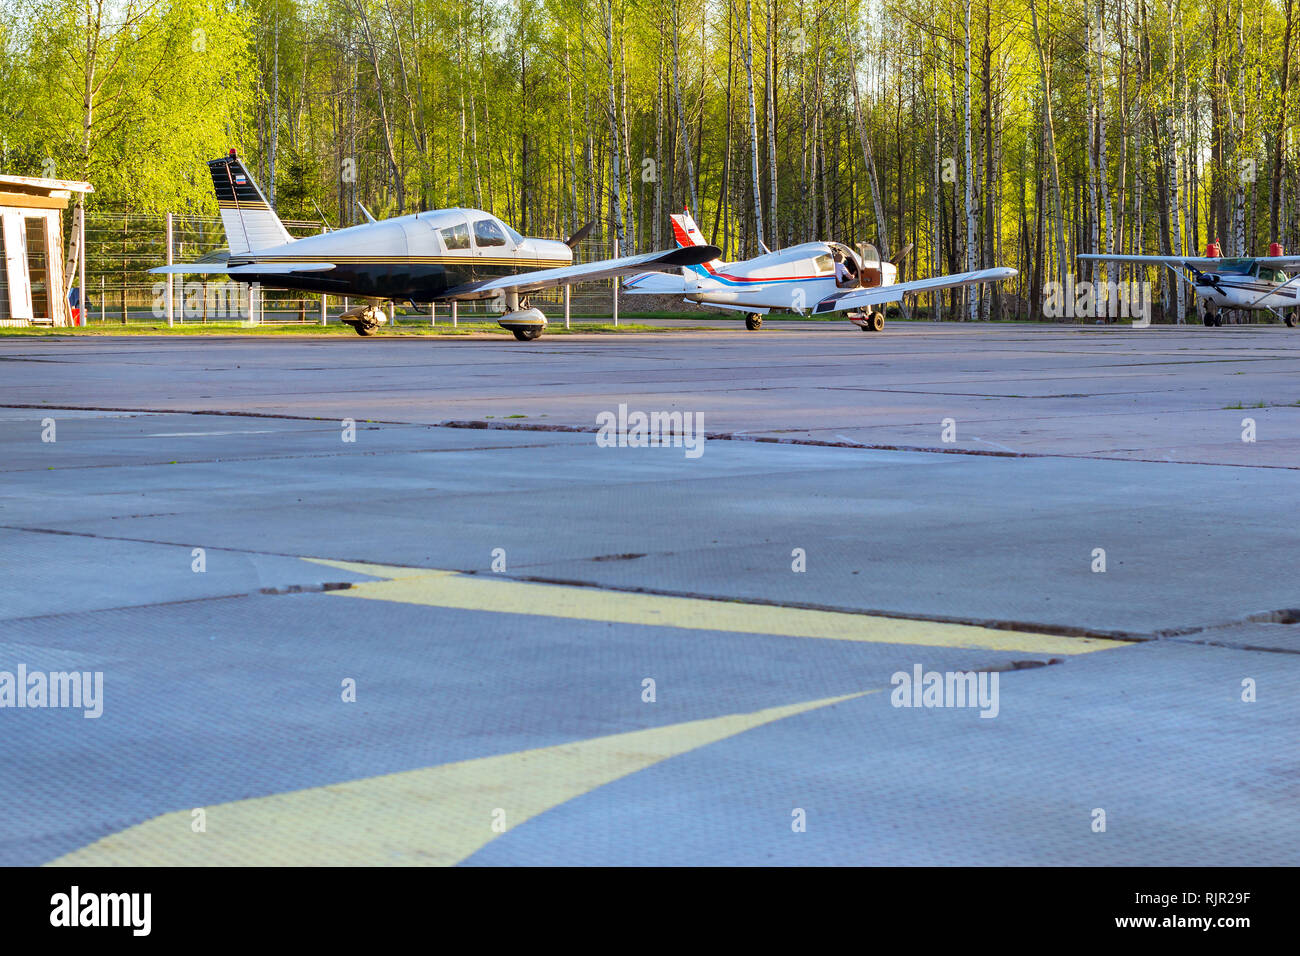 Licht Passagierflugzeuge vor der Abreise am Flughafen in Kronshtadt, St. Petersburg Russland geparkt. Industrie- und Civil Air Transport im Flugzeug. Professionelle Flüge in Flugzeugen Stockfoto